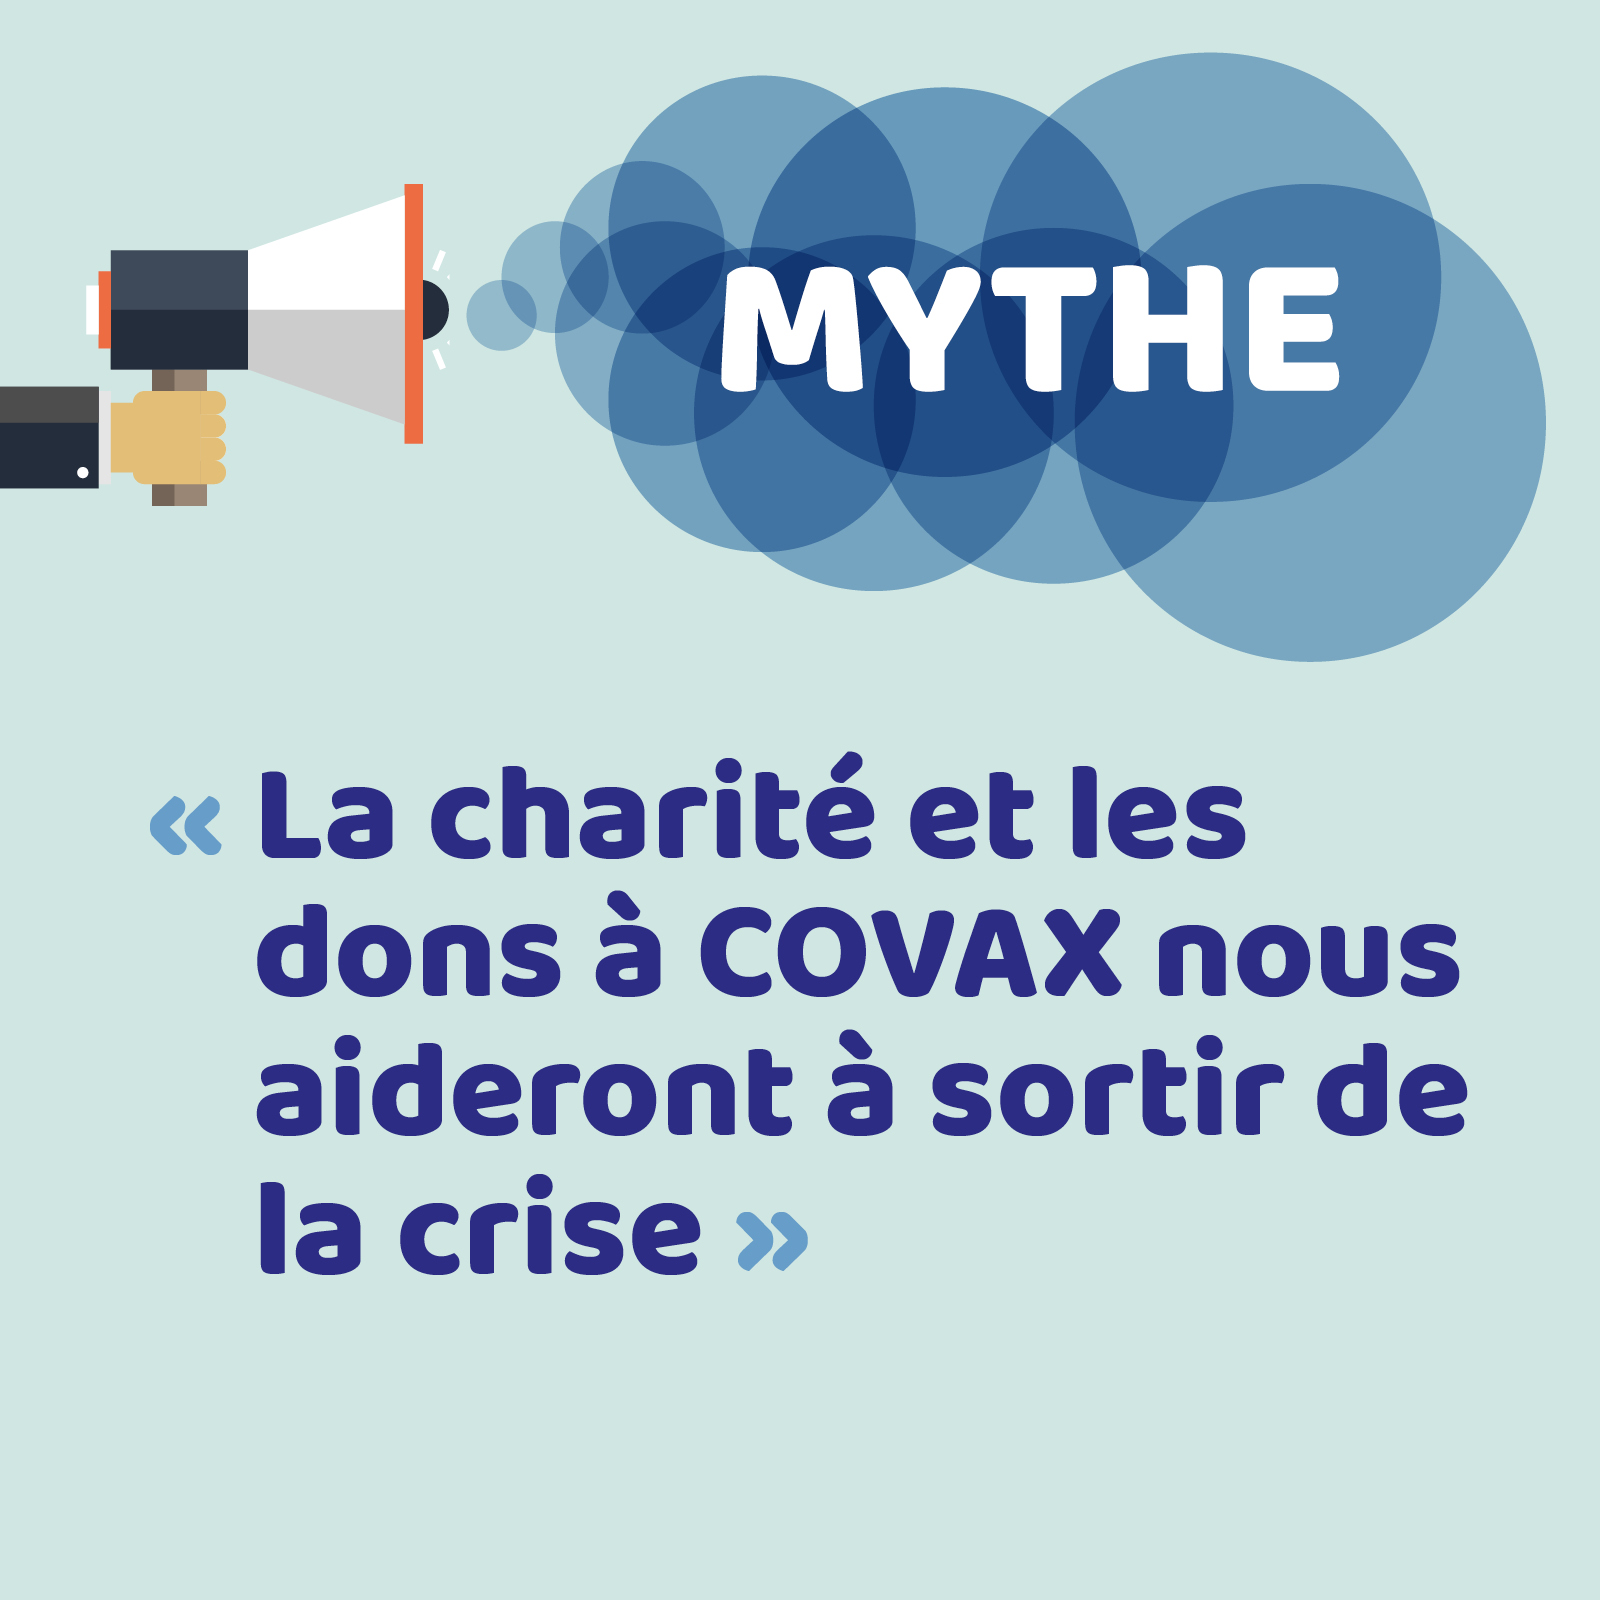 mythes visual_9_FR_mythe6-charite